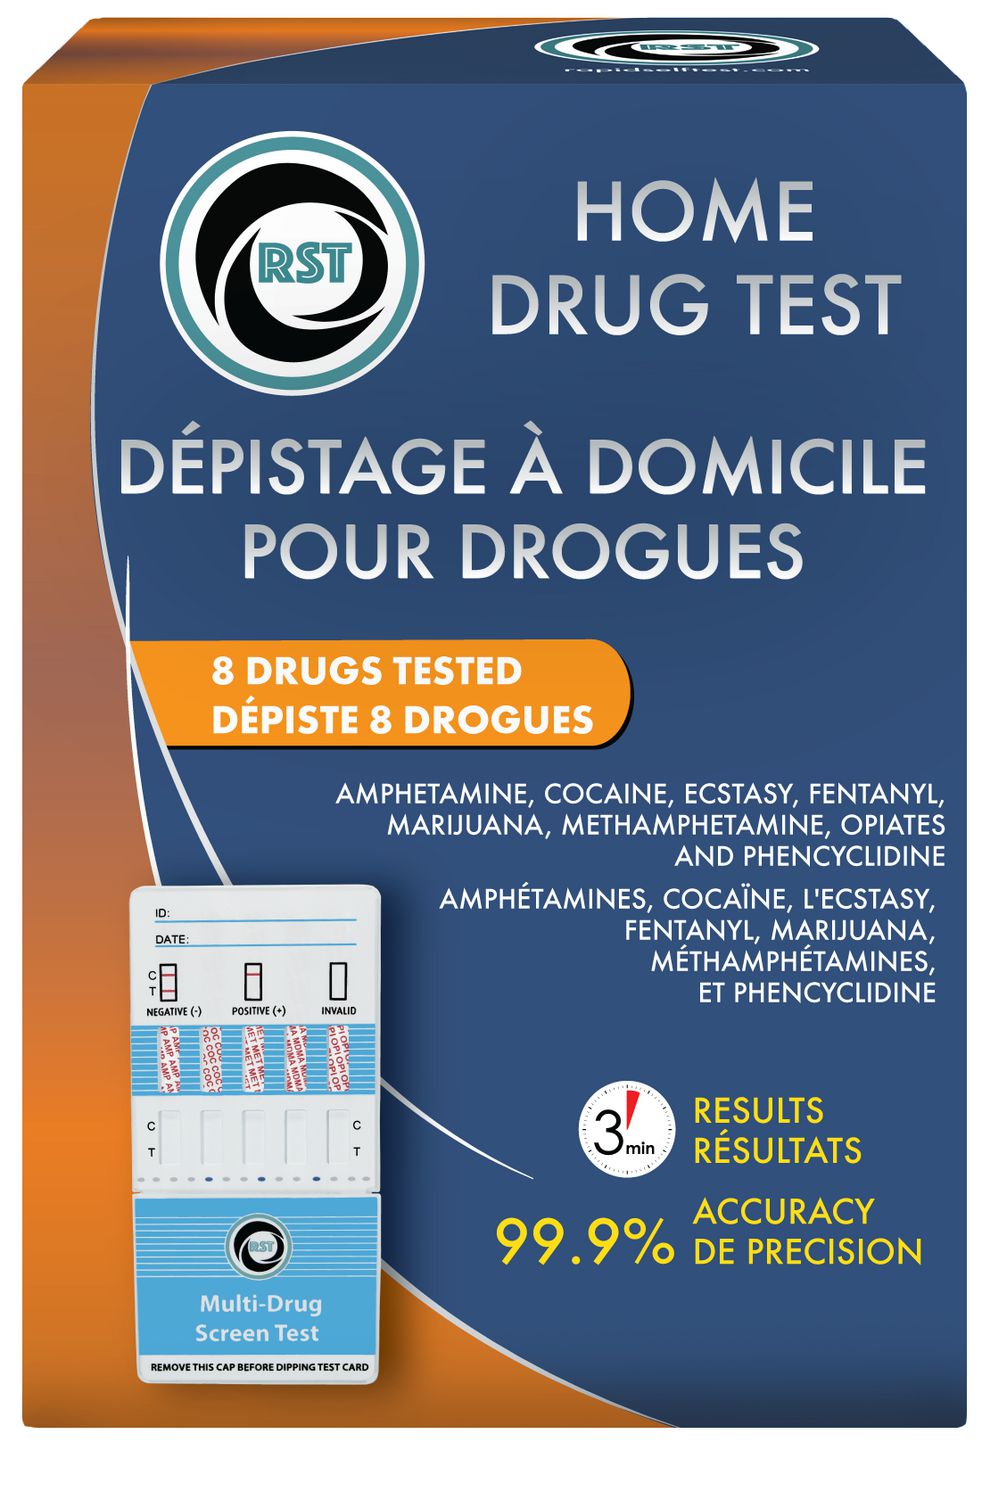 Depistage a Domicile Pour Drouge- Depiste 8 Drogues Test de drogue d’urine  depiste 8 drouges.